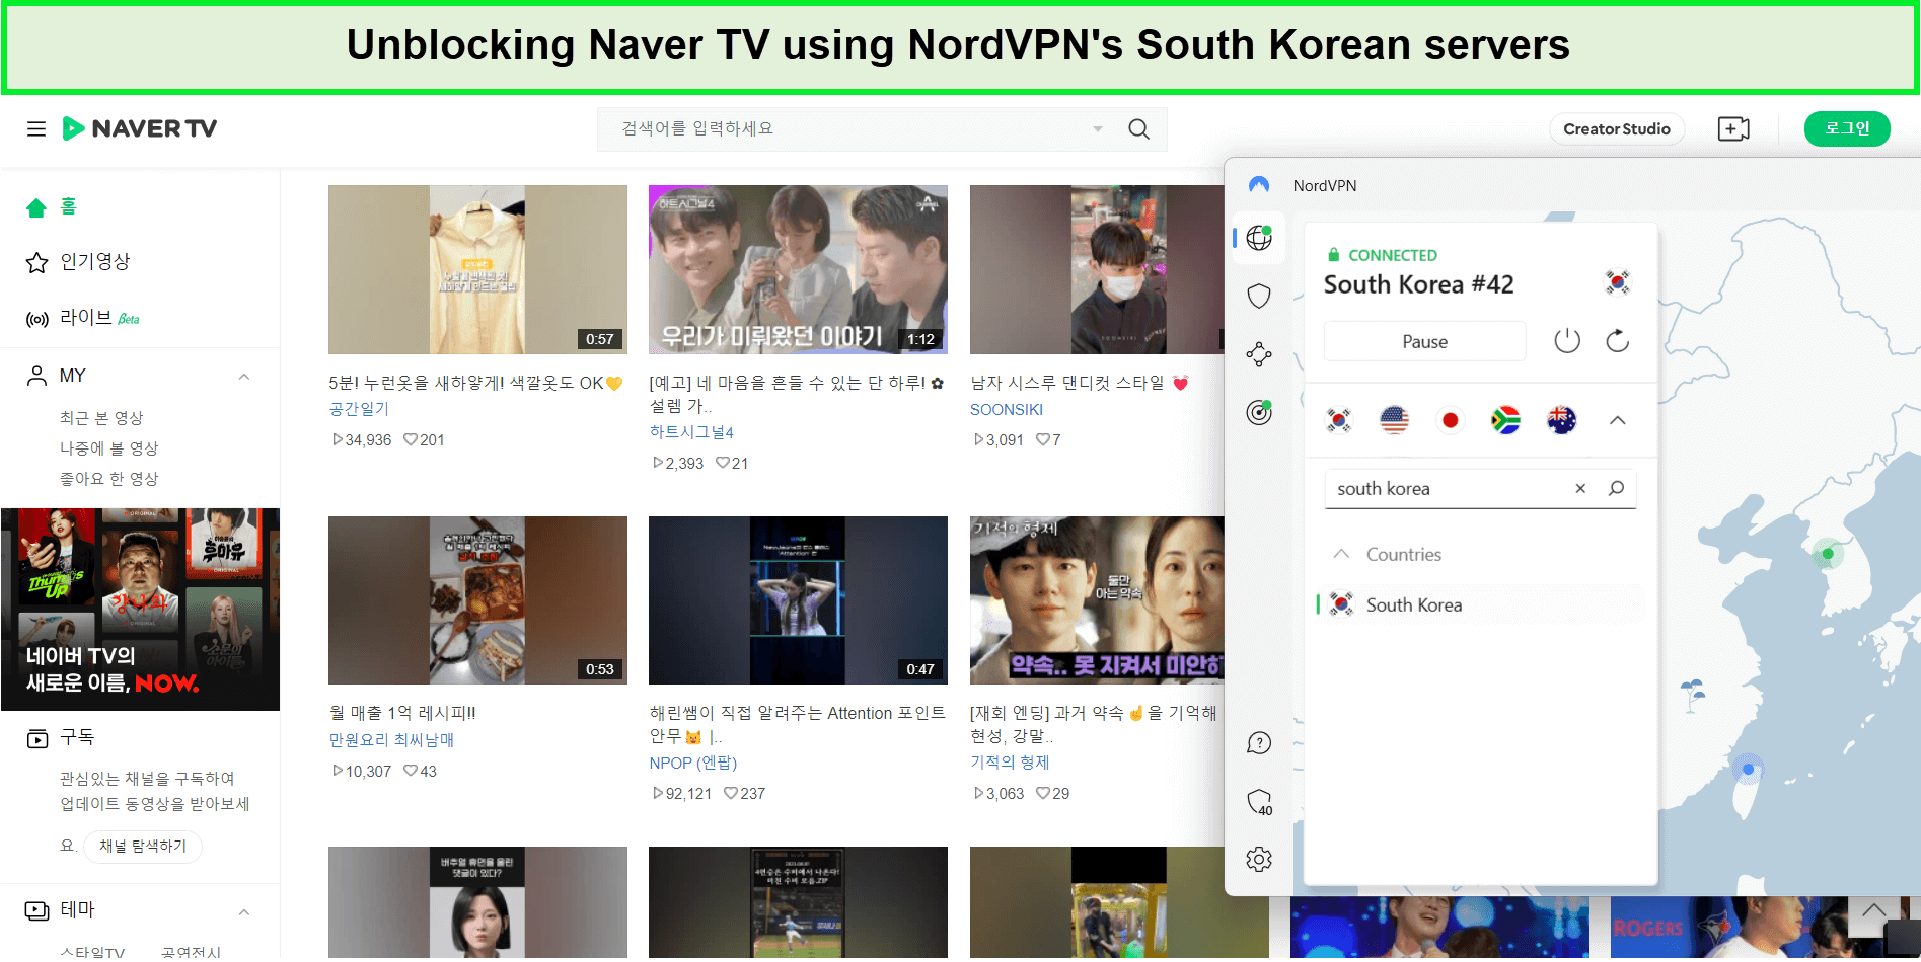 naver-tv-outside-South Korea-unblocked-by-nordvpn